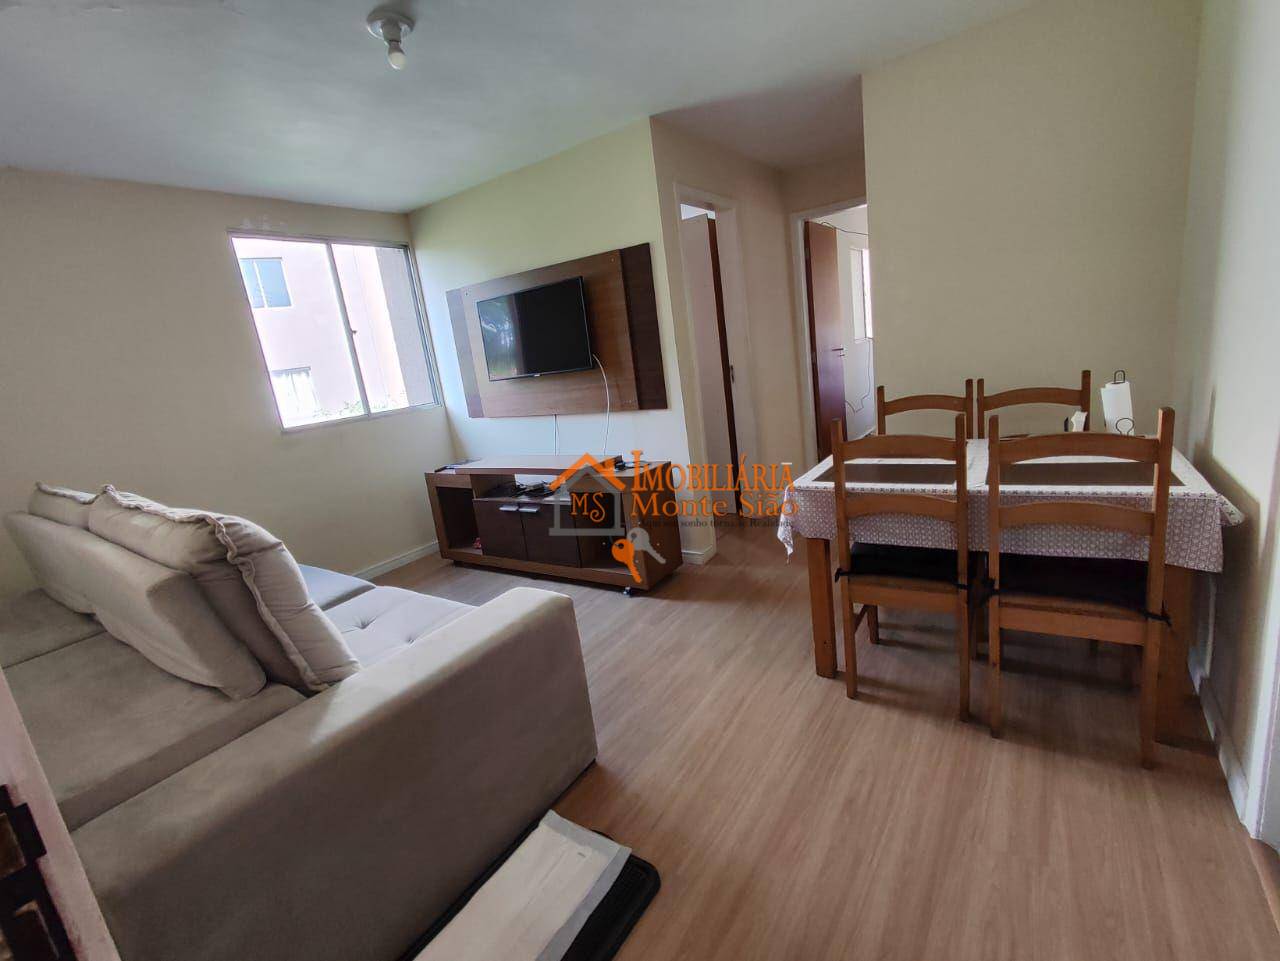 Apartamento com 2 dormitórios à venda, 45 m² por R$ 195.000,00 - Jardim São Luis - Guarulhos/SP